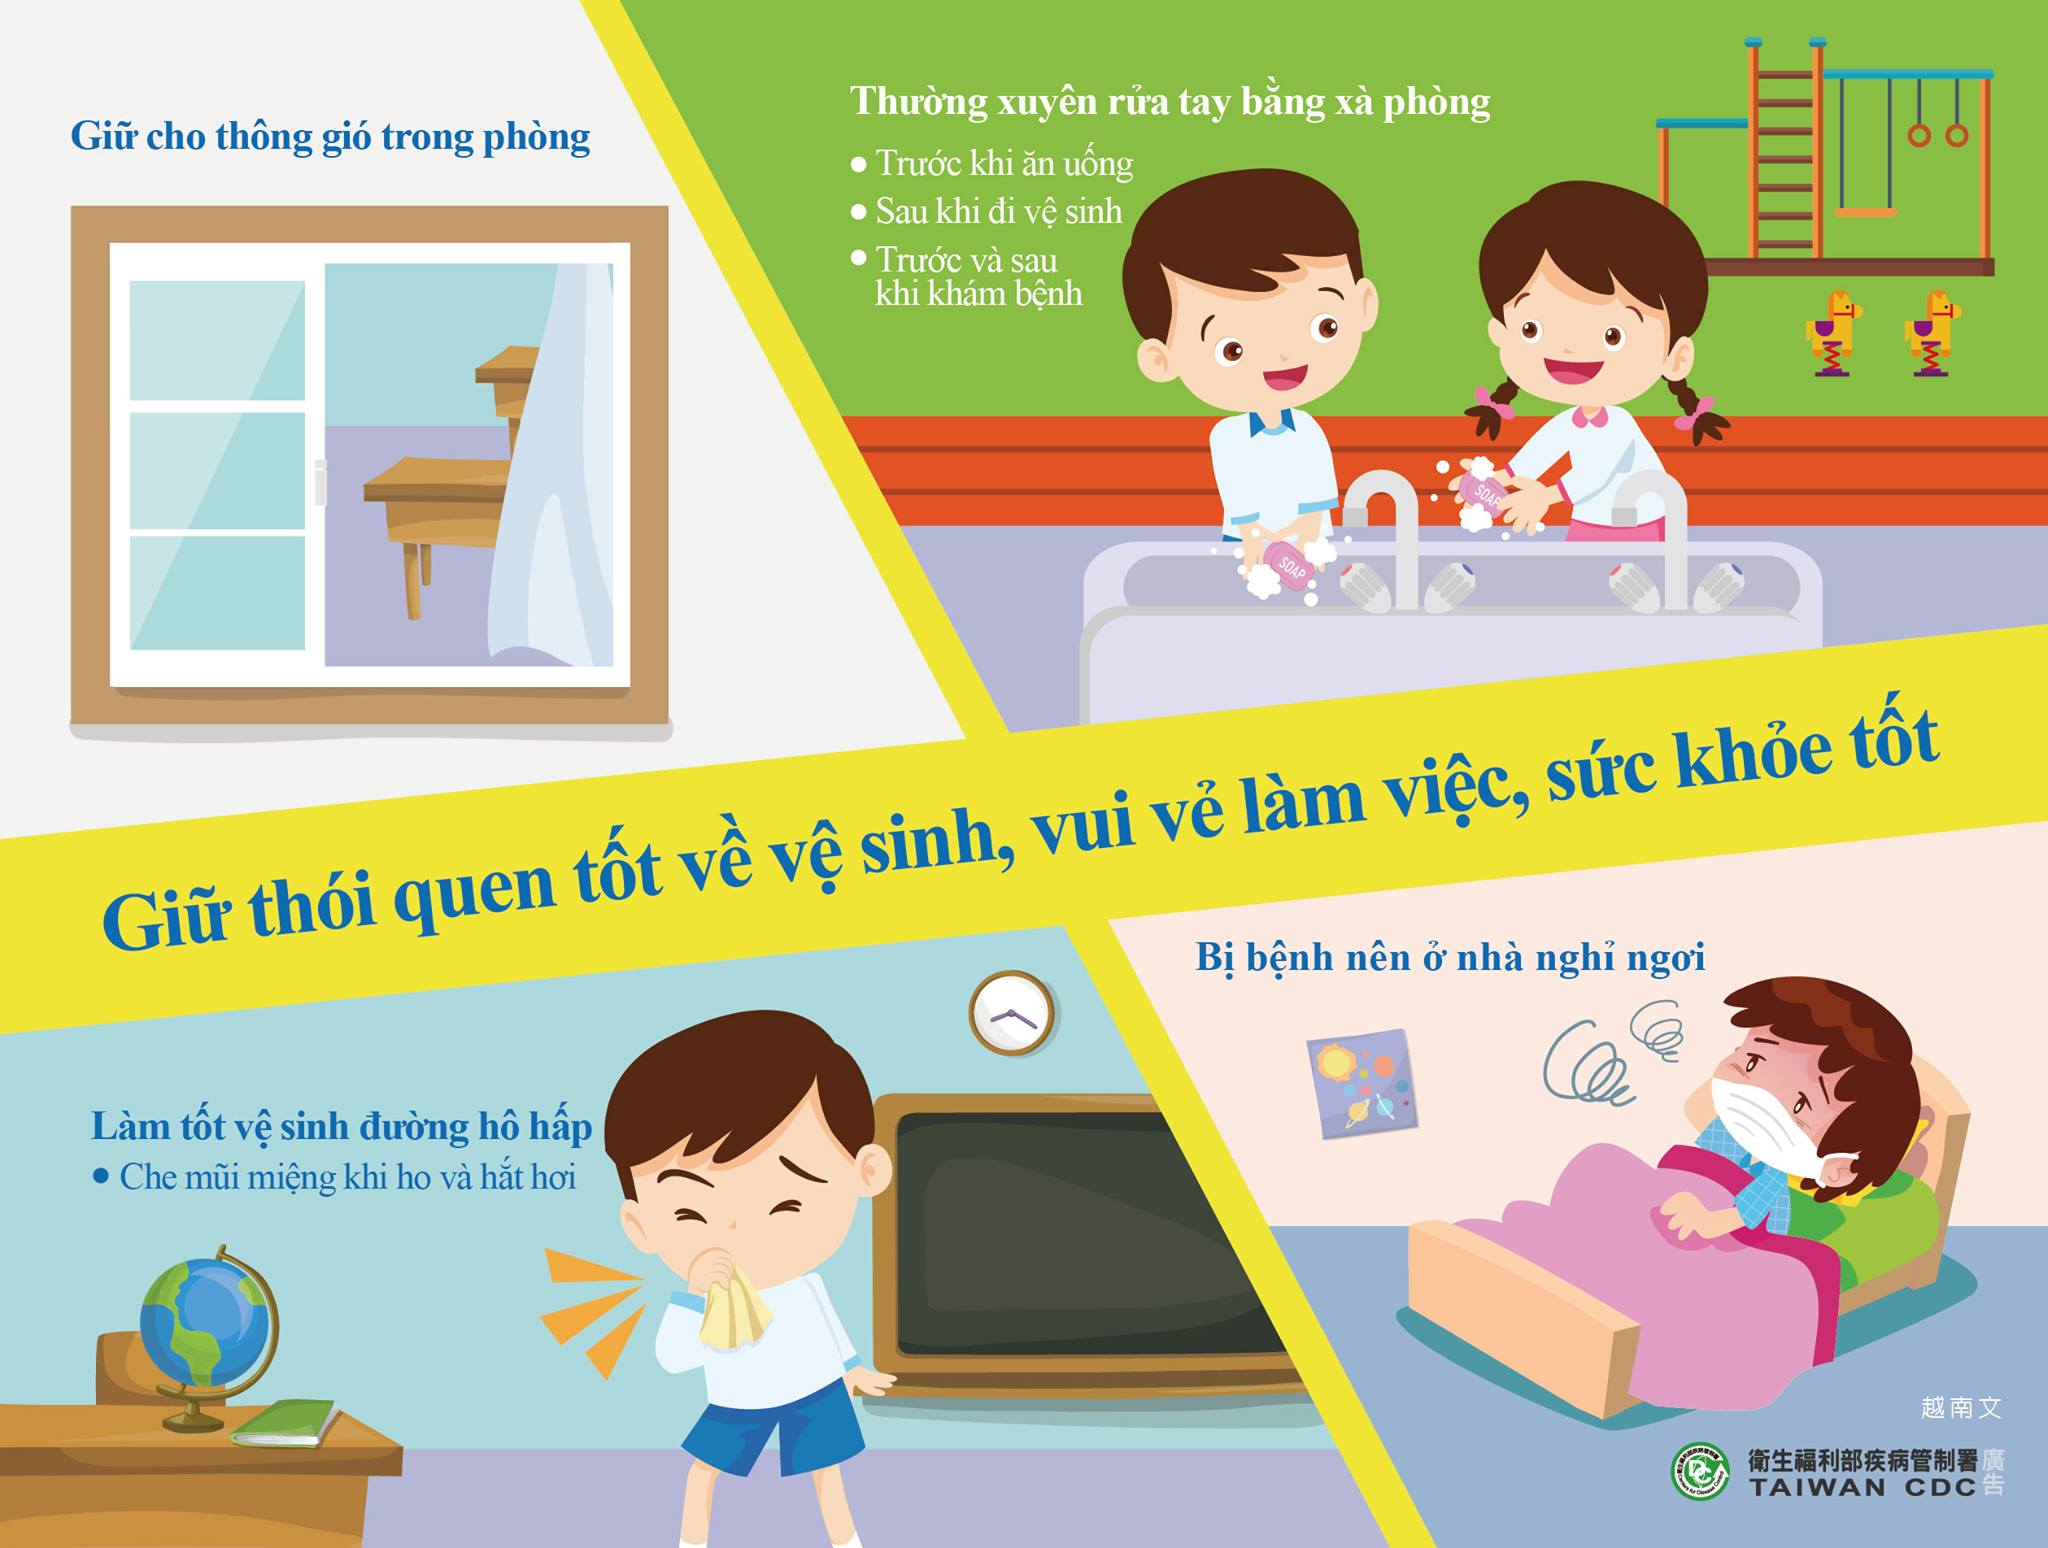 衛生福利部宣導保持衛生好習慣好防疫-越南文